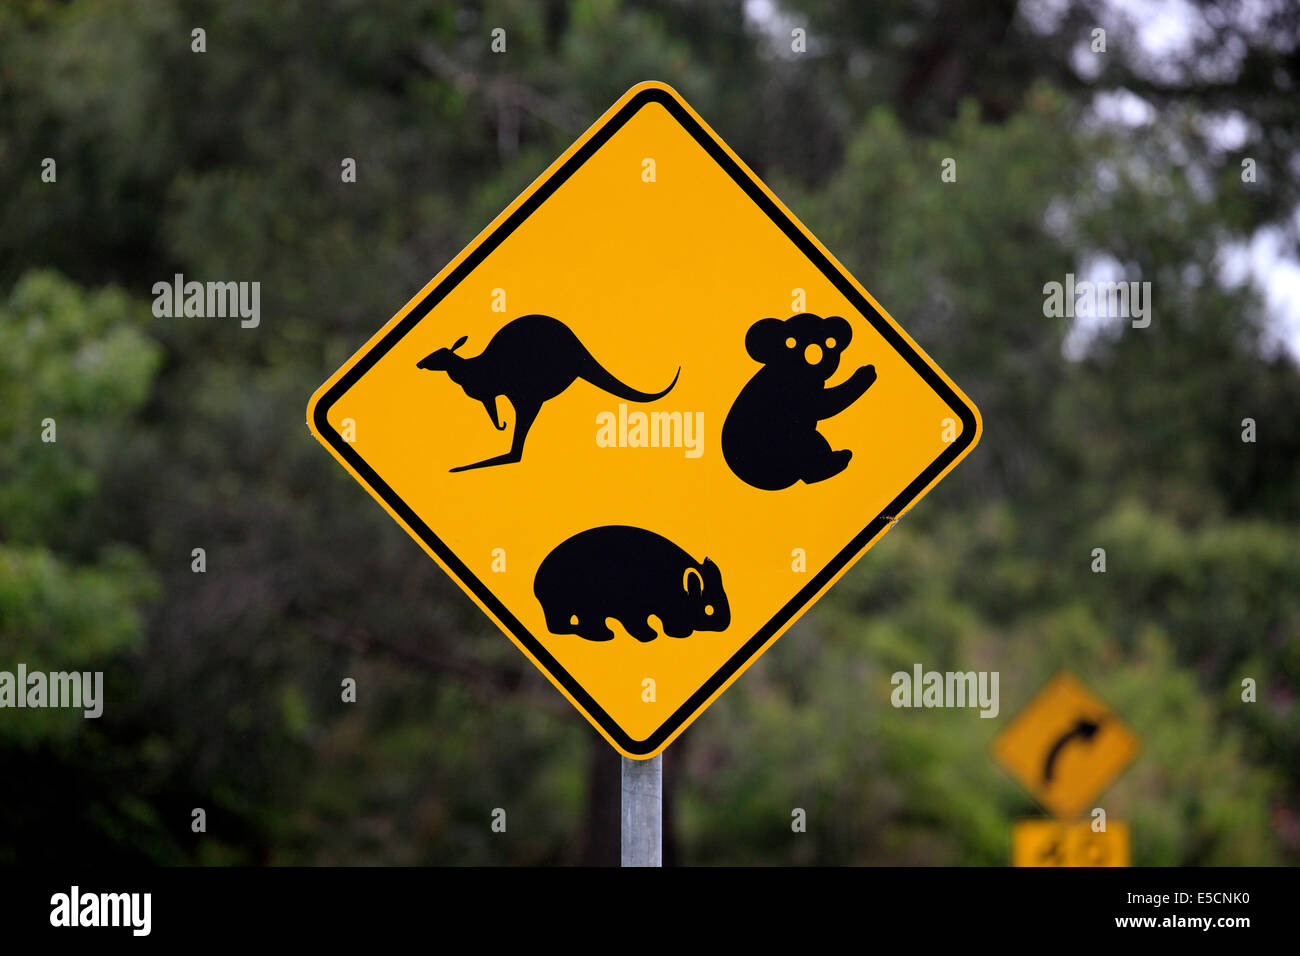 Warning sign, koala, wombat, kangaroo, Victoria, Australia Stock Photo